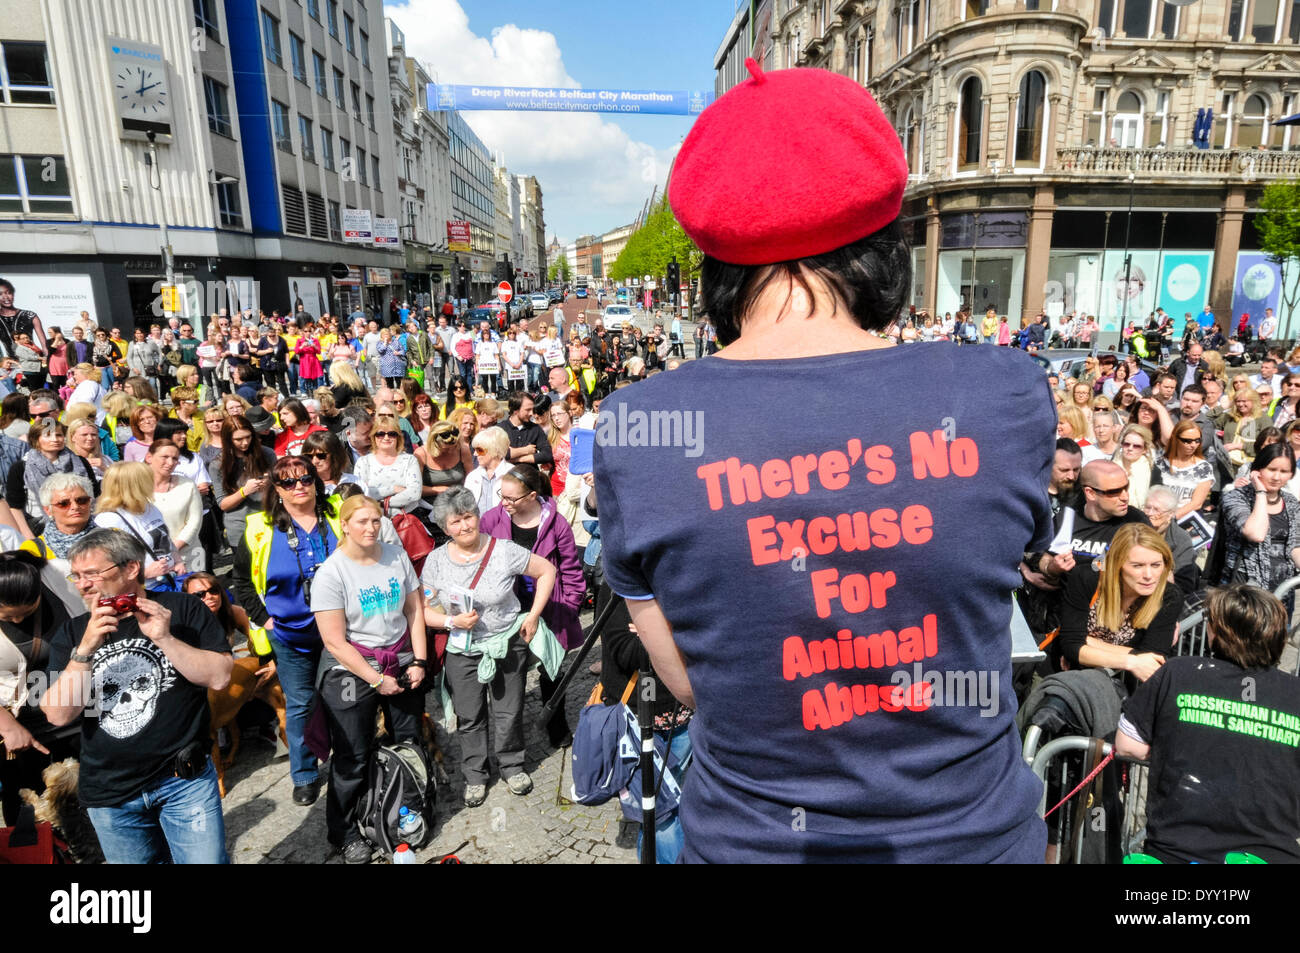 Belfast, Irlanda del Norte. 27 Apr 2014 - Cientos de personas se reúnen en un mitin pidiendo el fin a la crueldad animal y una legislación más estricta para los toxicómanos. Crédito: Stephen Barnes/Alamy Live News Foto de stock